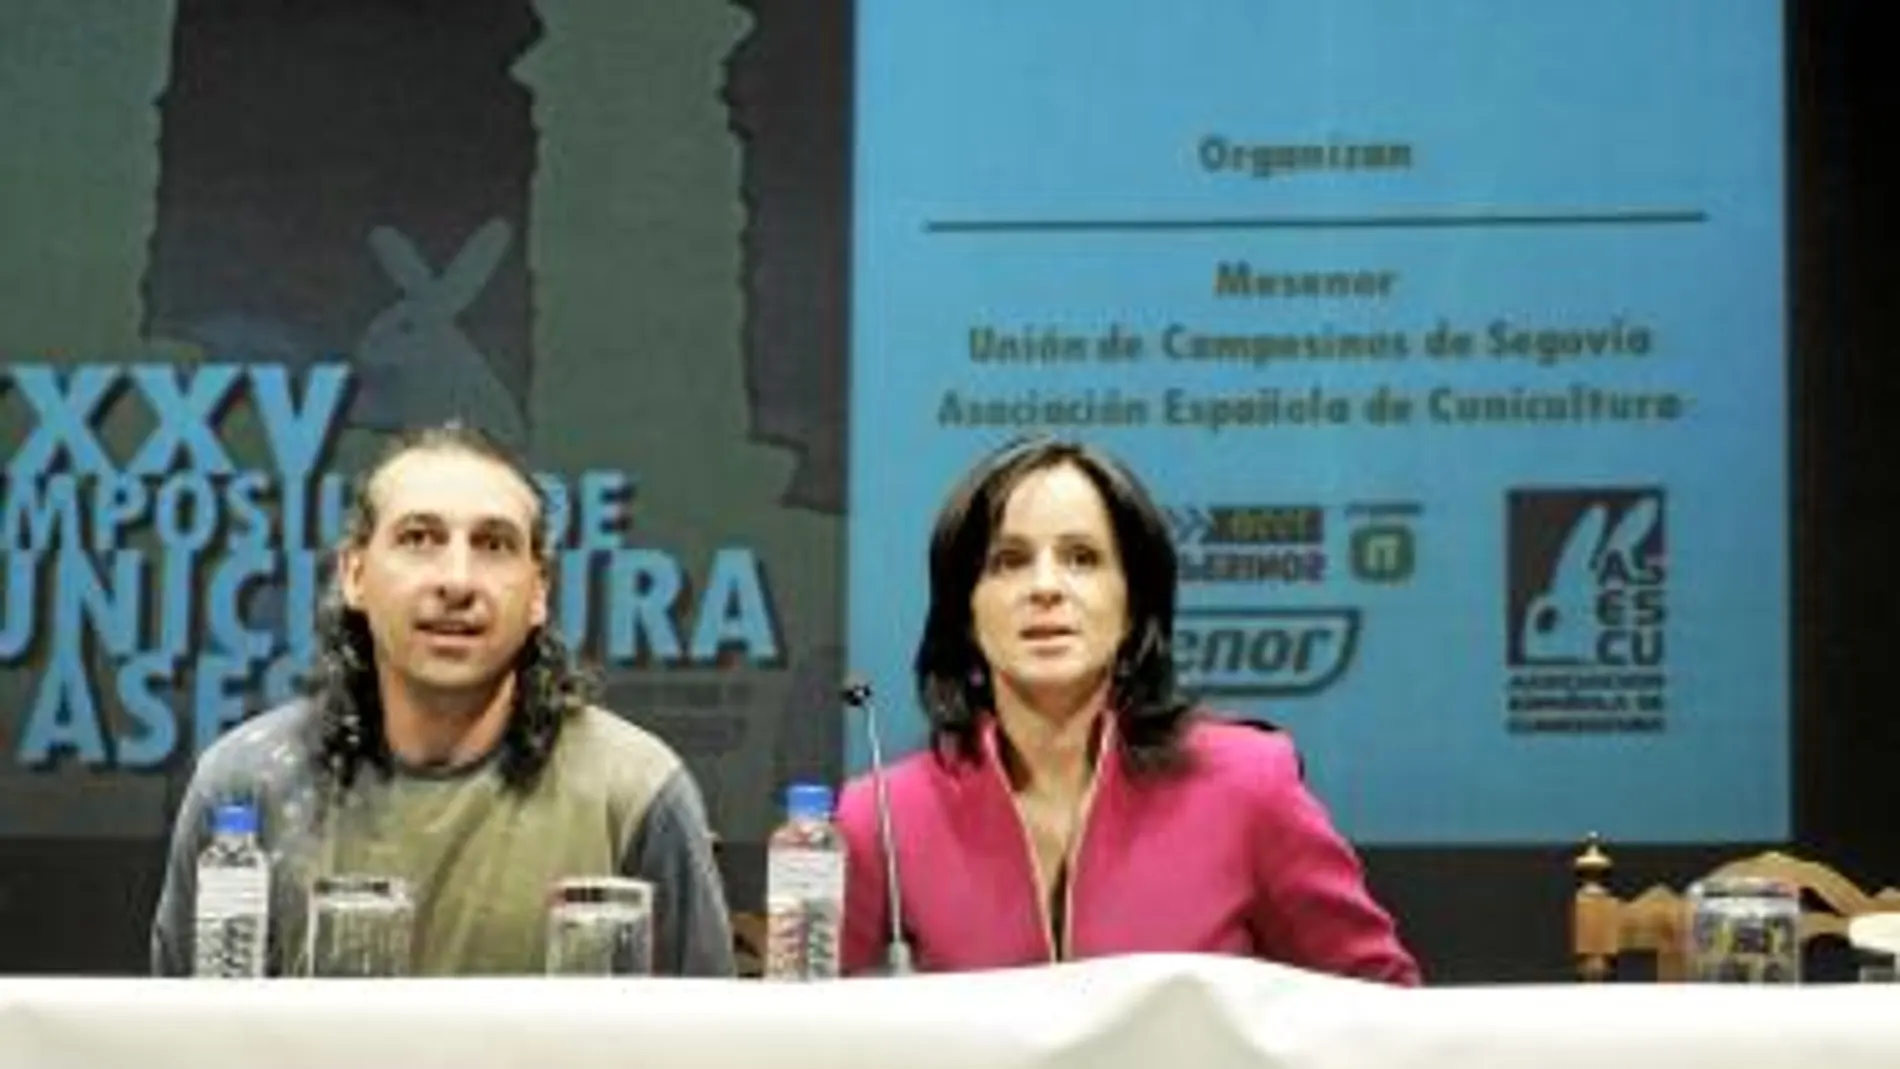 Silvia Clemente y Palacín participan en el Symposium de Cunicultura